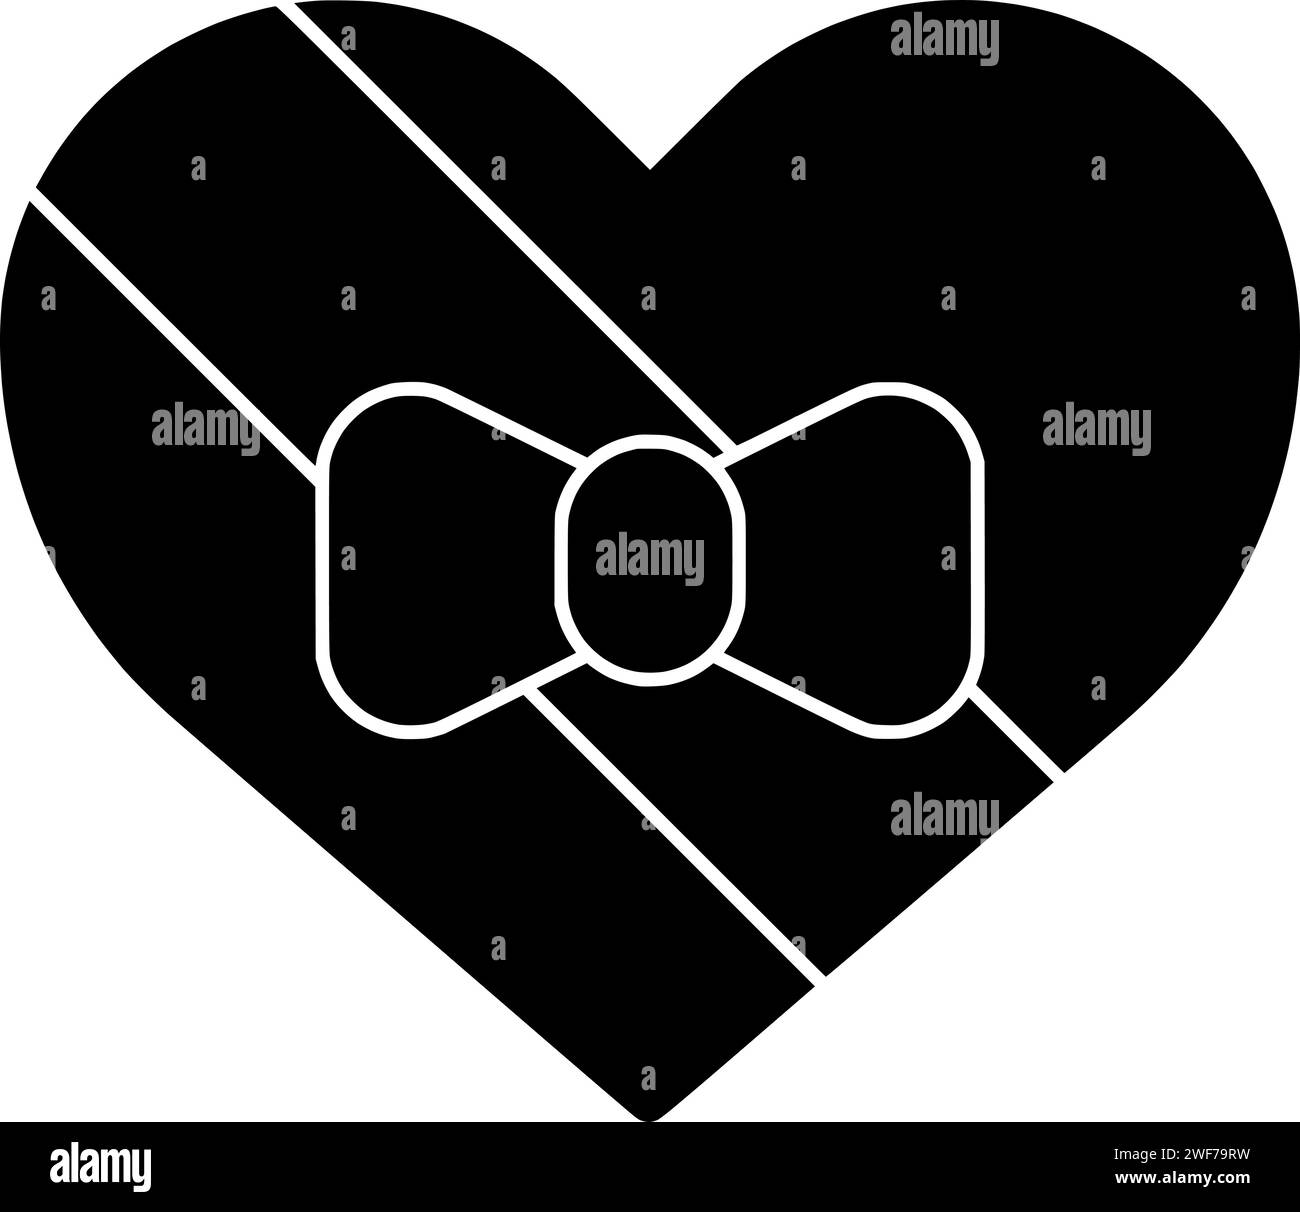 illustrazione a forma di cuore silhouette a freccia logo a forma di cupido icona a forma d'amore contorno di san valentino xoxo romantico giorno festivo festeggiamento vettoriale romantico forma regalo felice amour Illustrazione Vettoriale